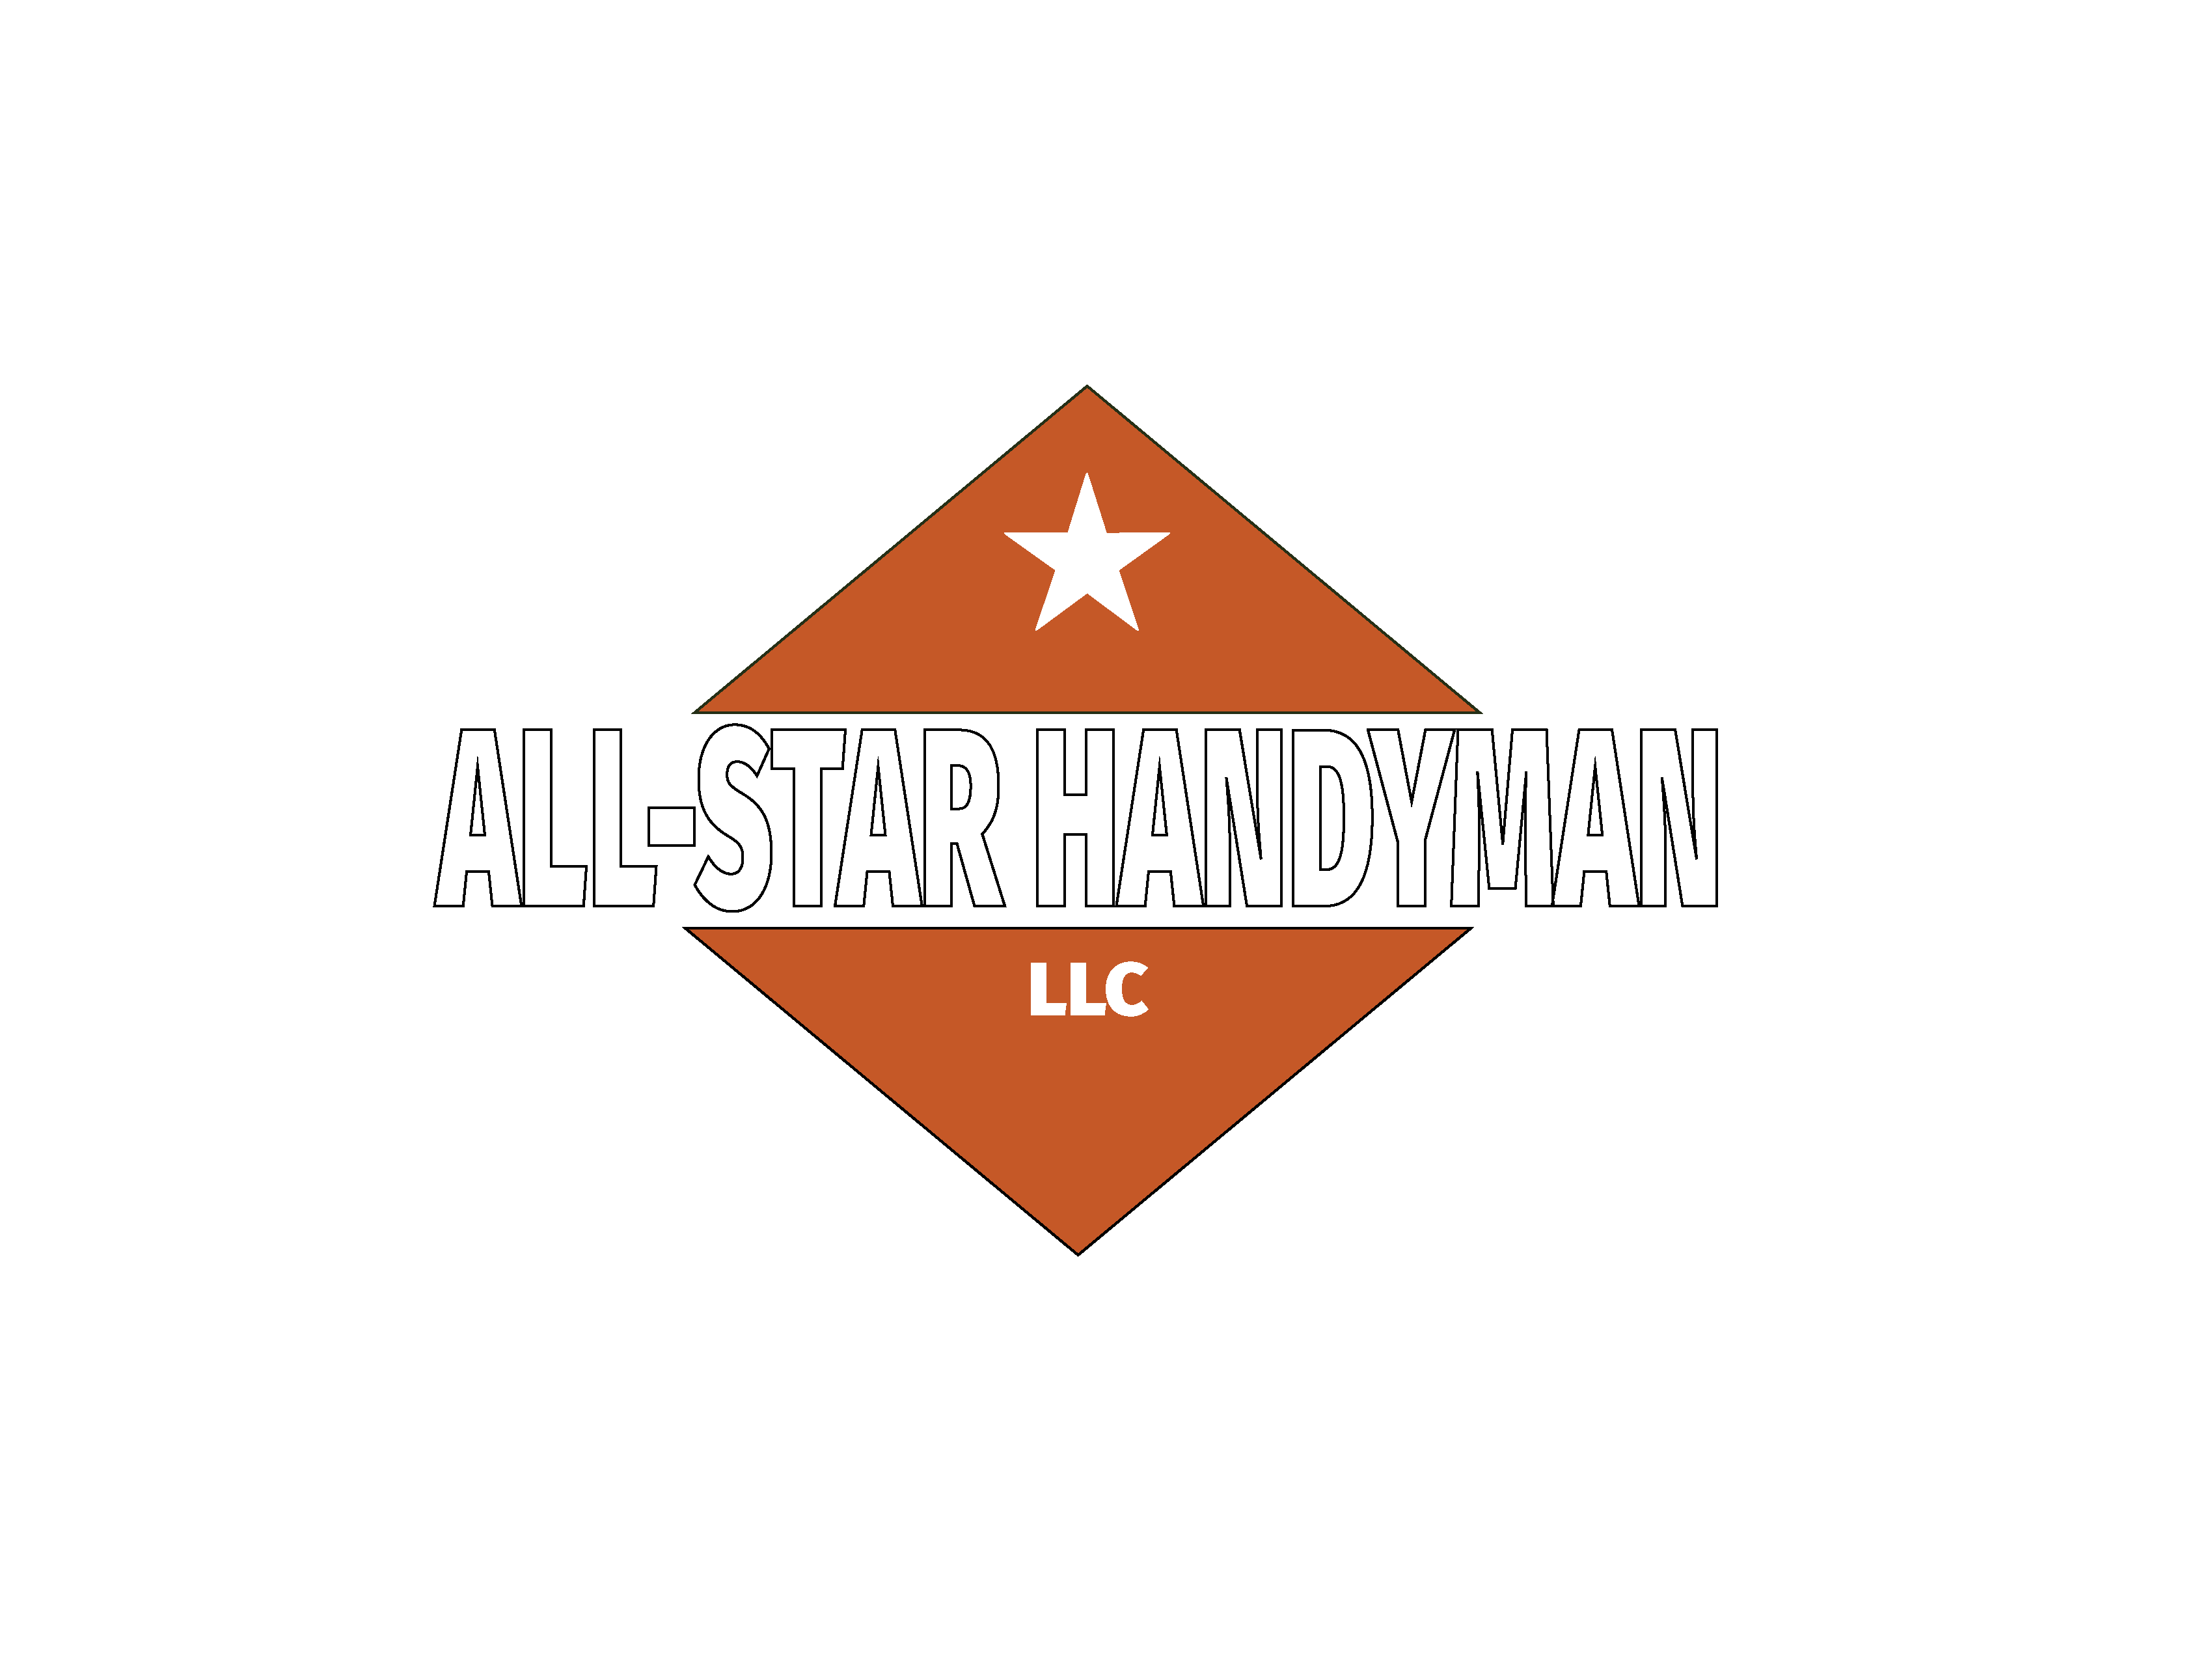 All Star Handyman LLC